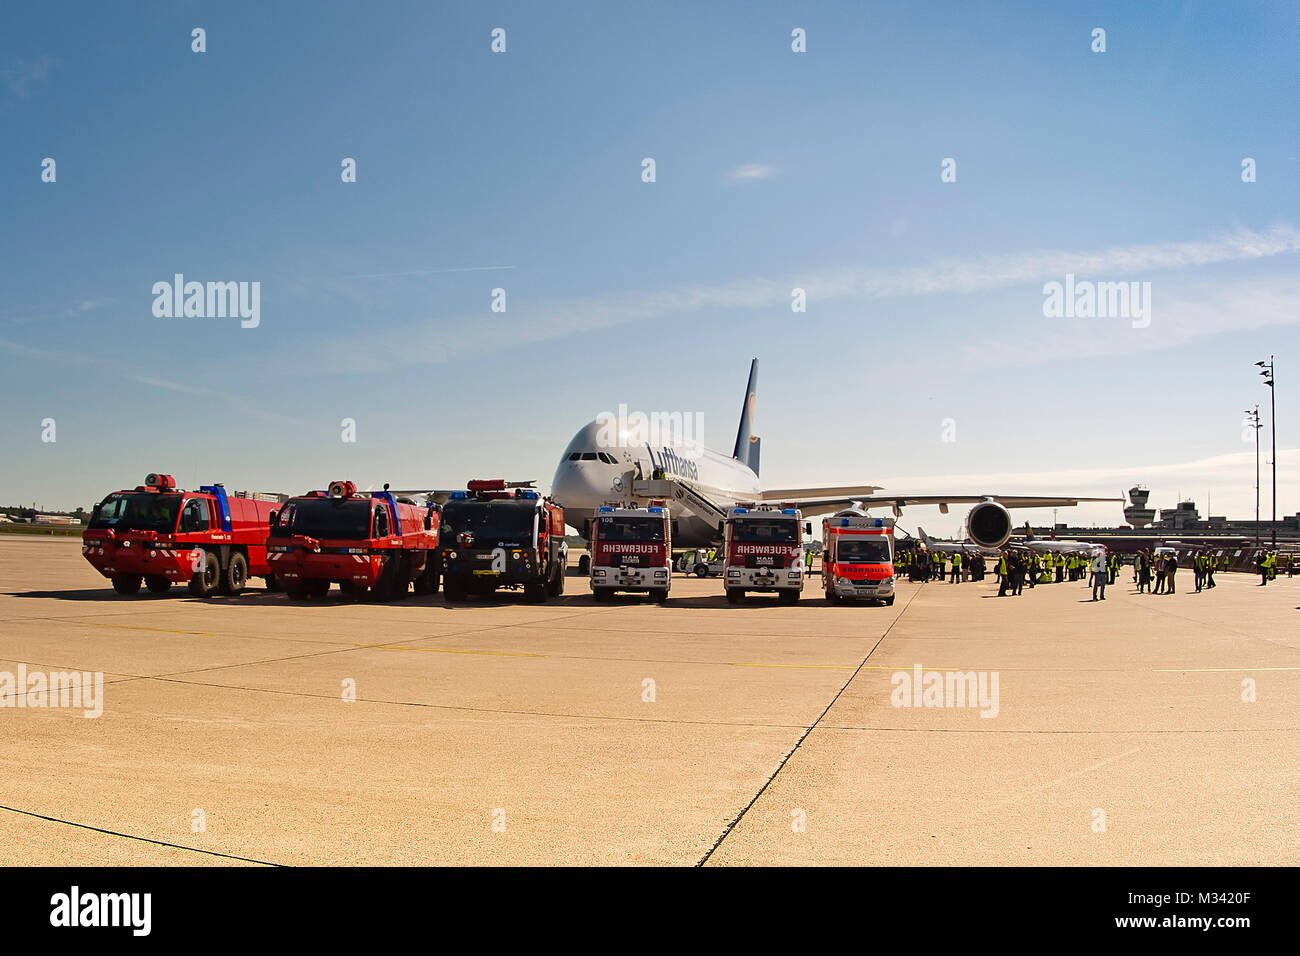 Am 03.06.2010 landet der Airbus A 380 das erste mal auf dem Flughafen Berlin Tegel. Stock Photo